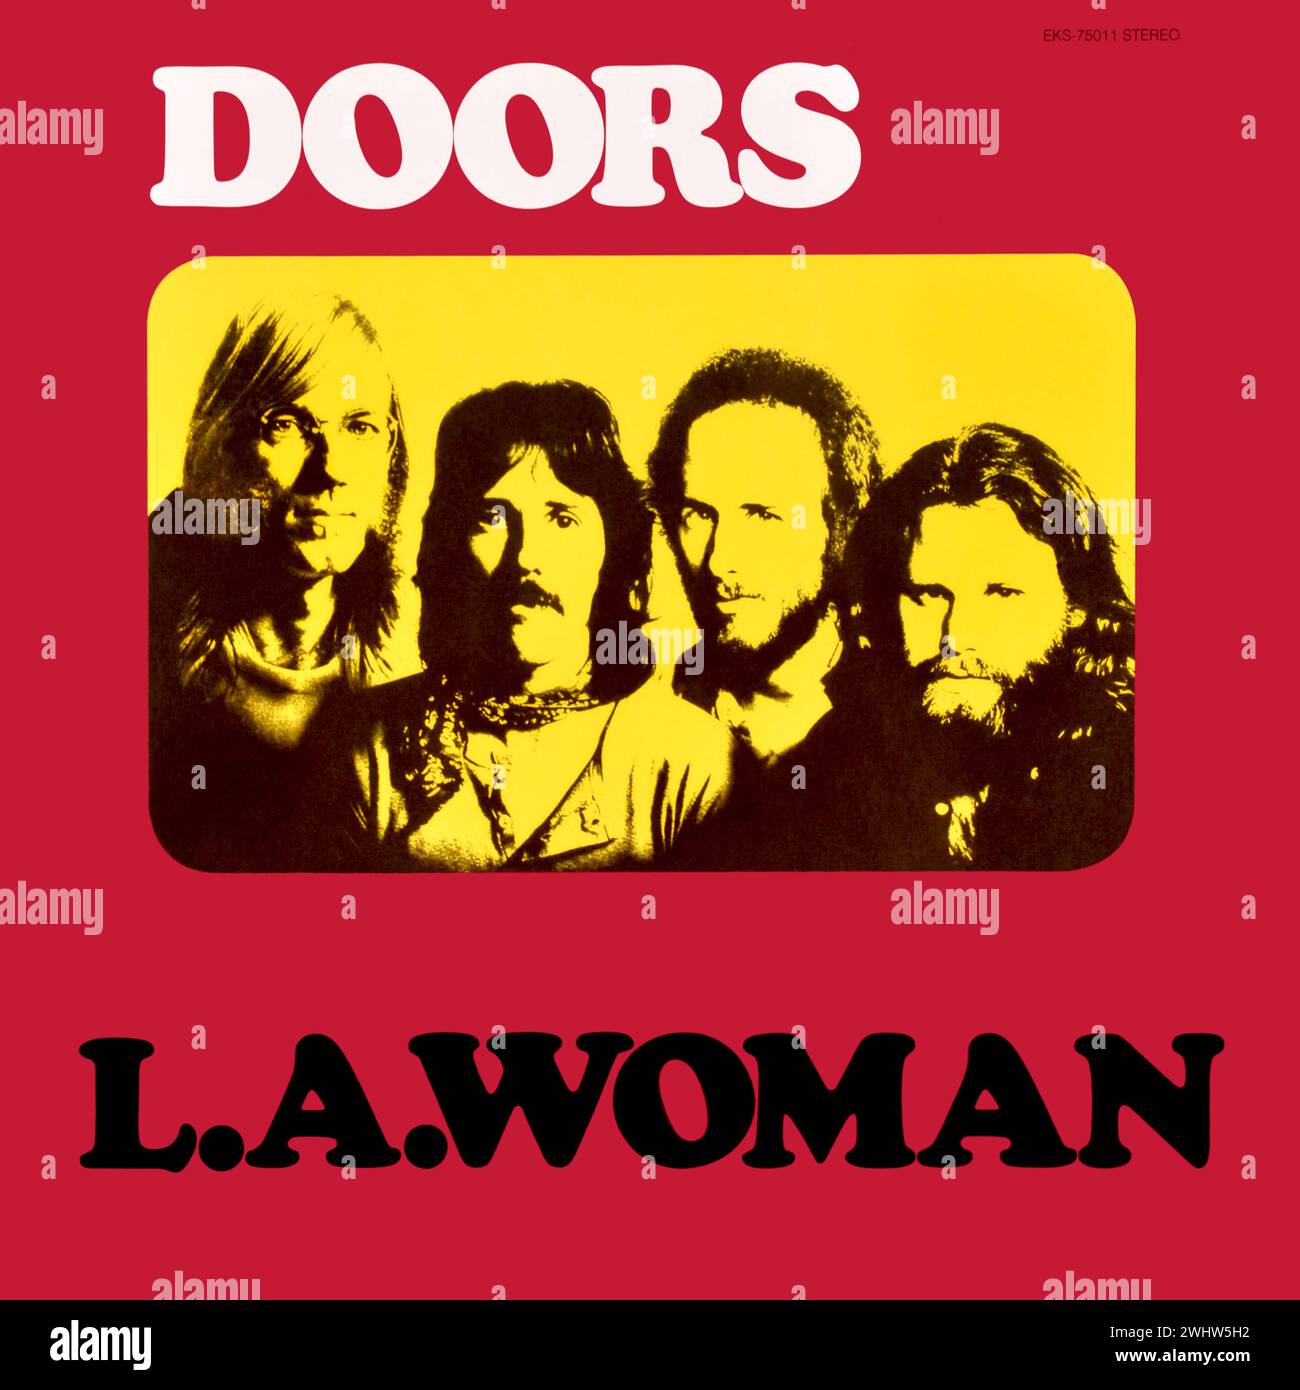 The Doors - original vinyl album cover - L.A. Woman - 1971 Stock Photo